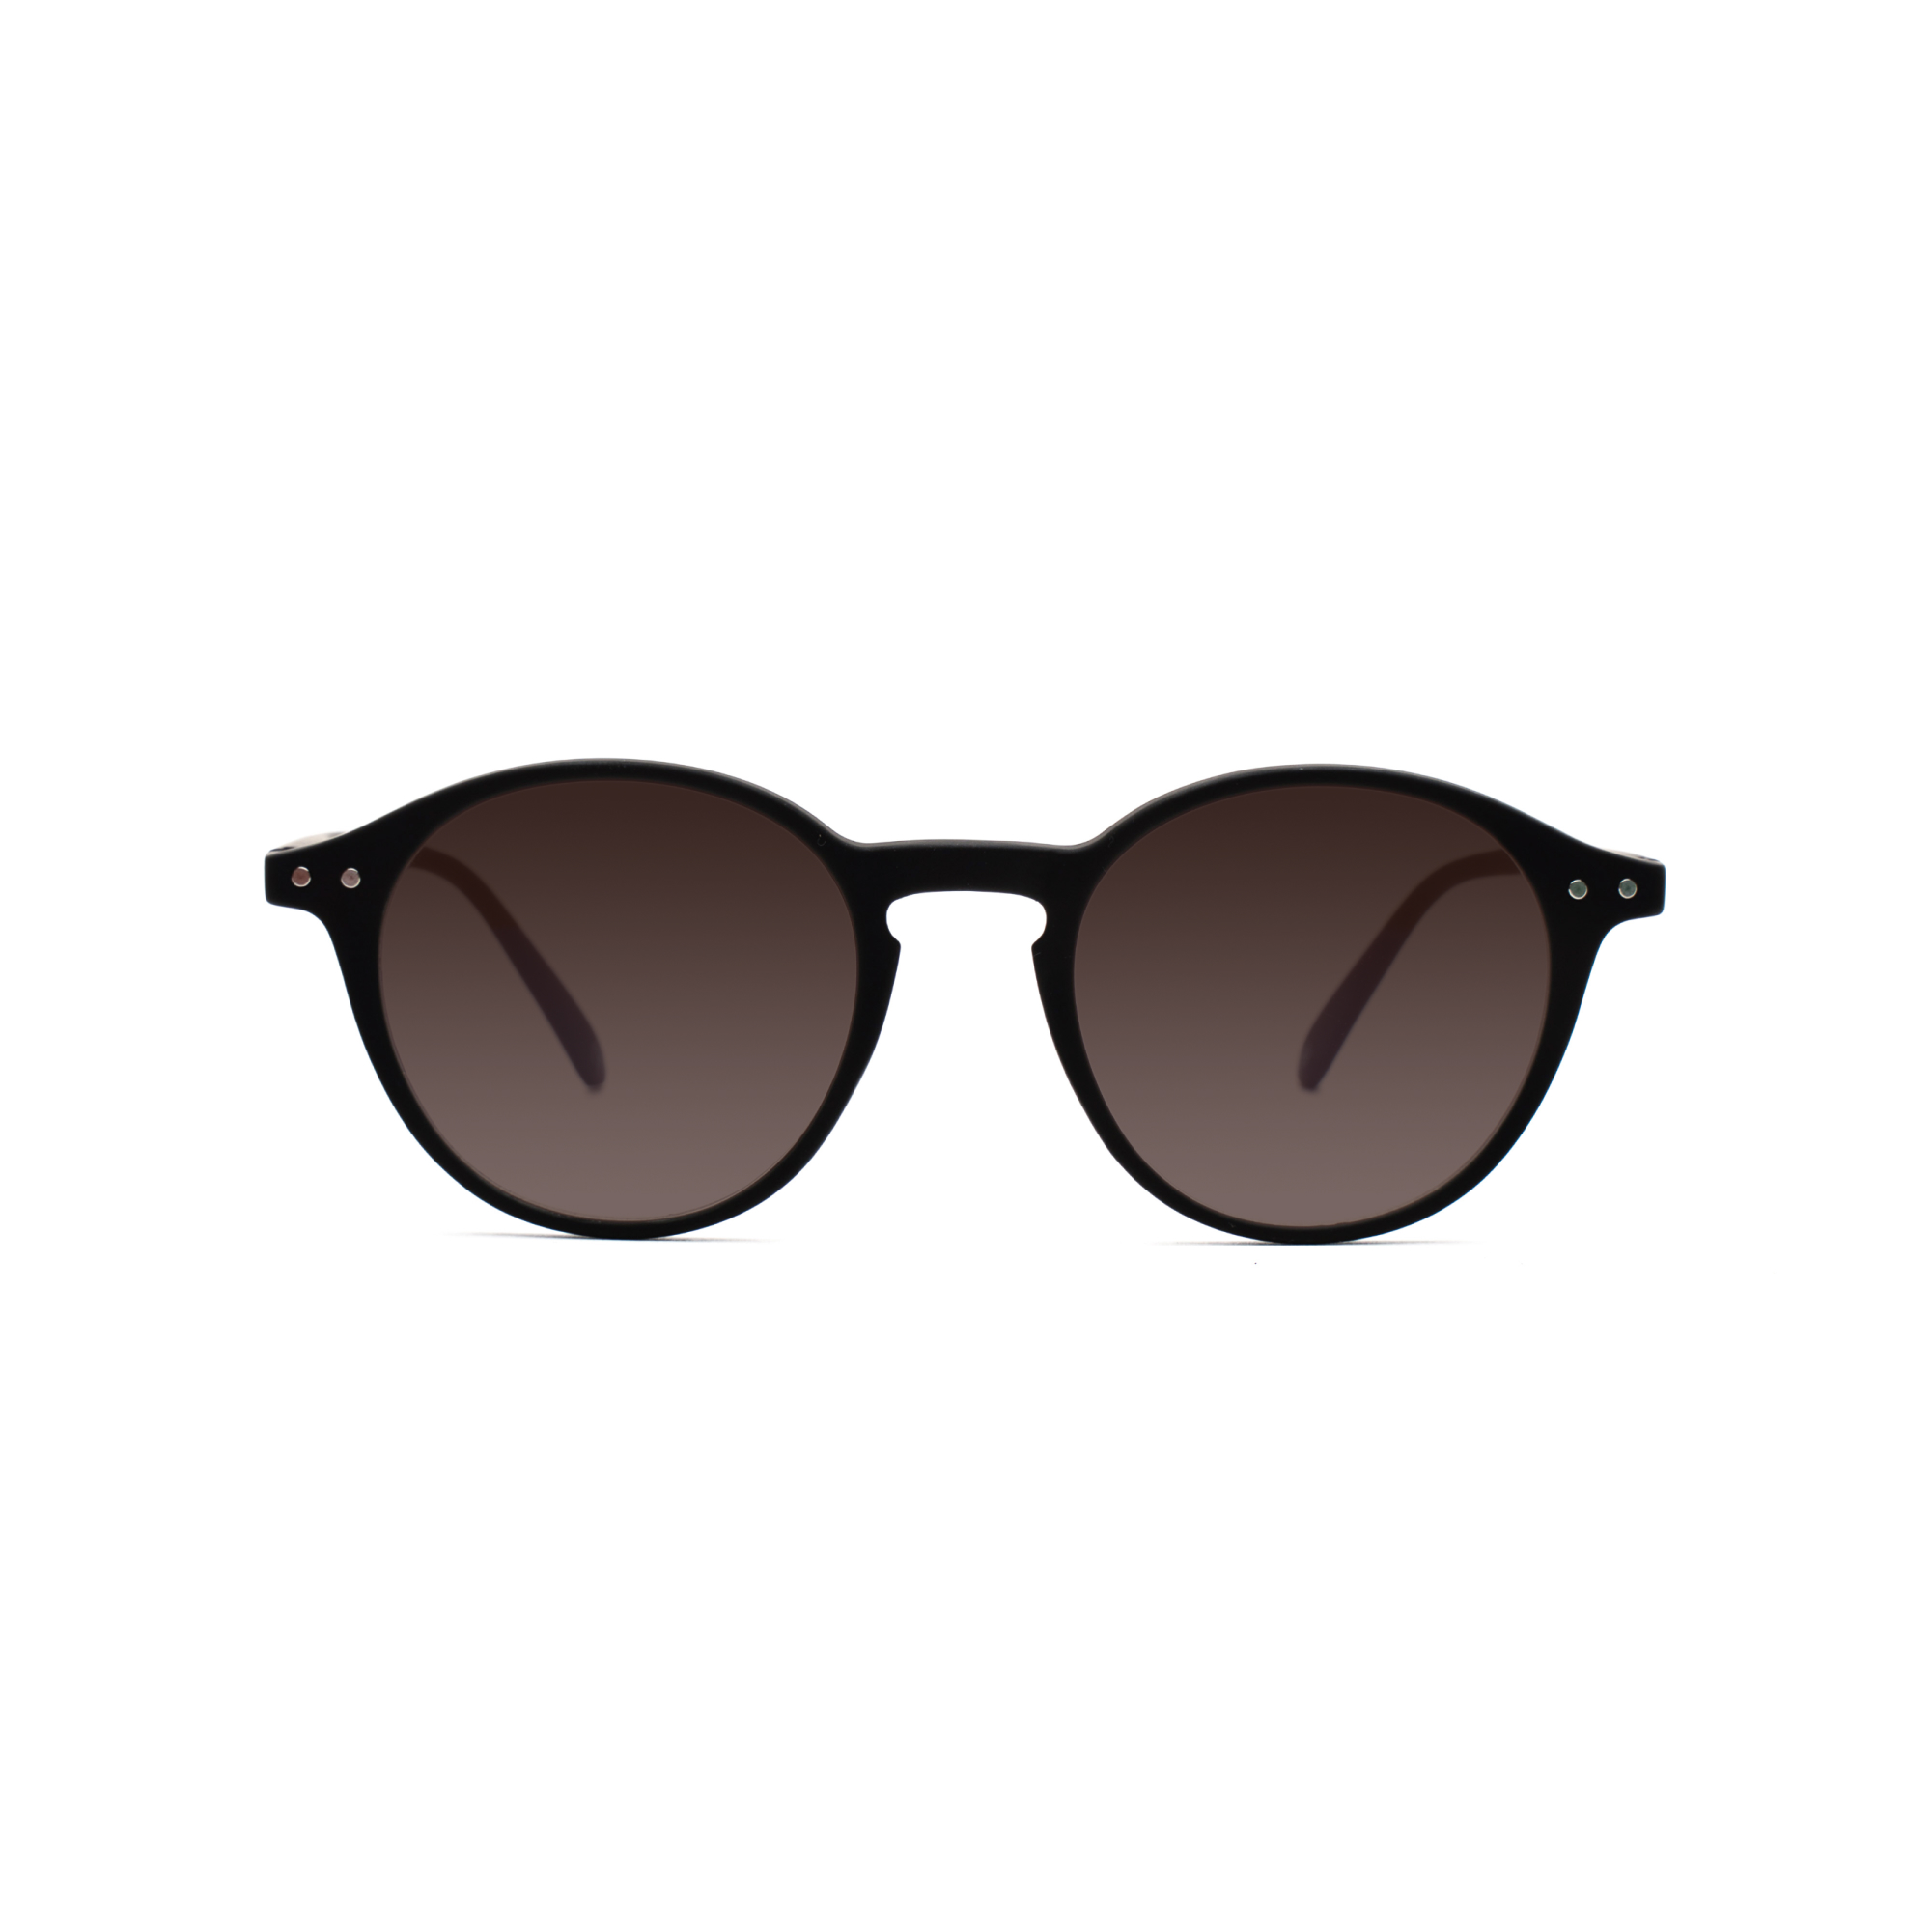 Women's transition glasses – Luca GEN 8 w - Black